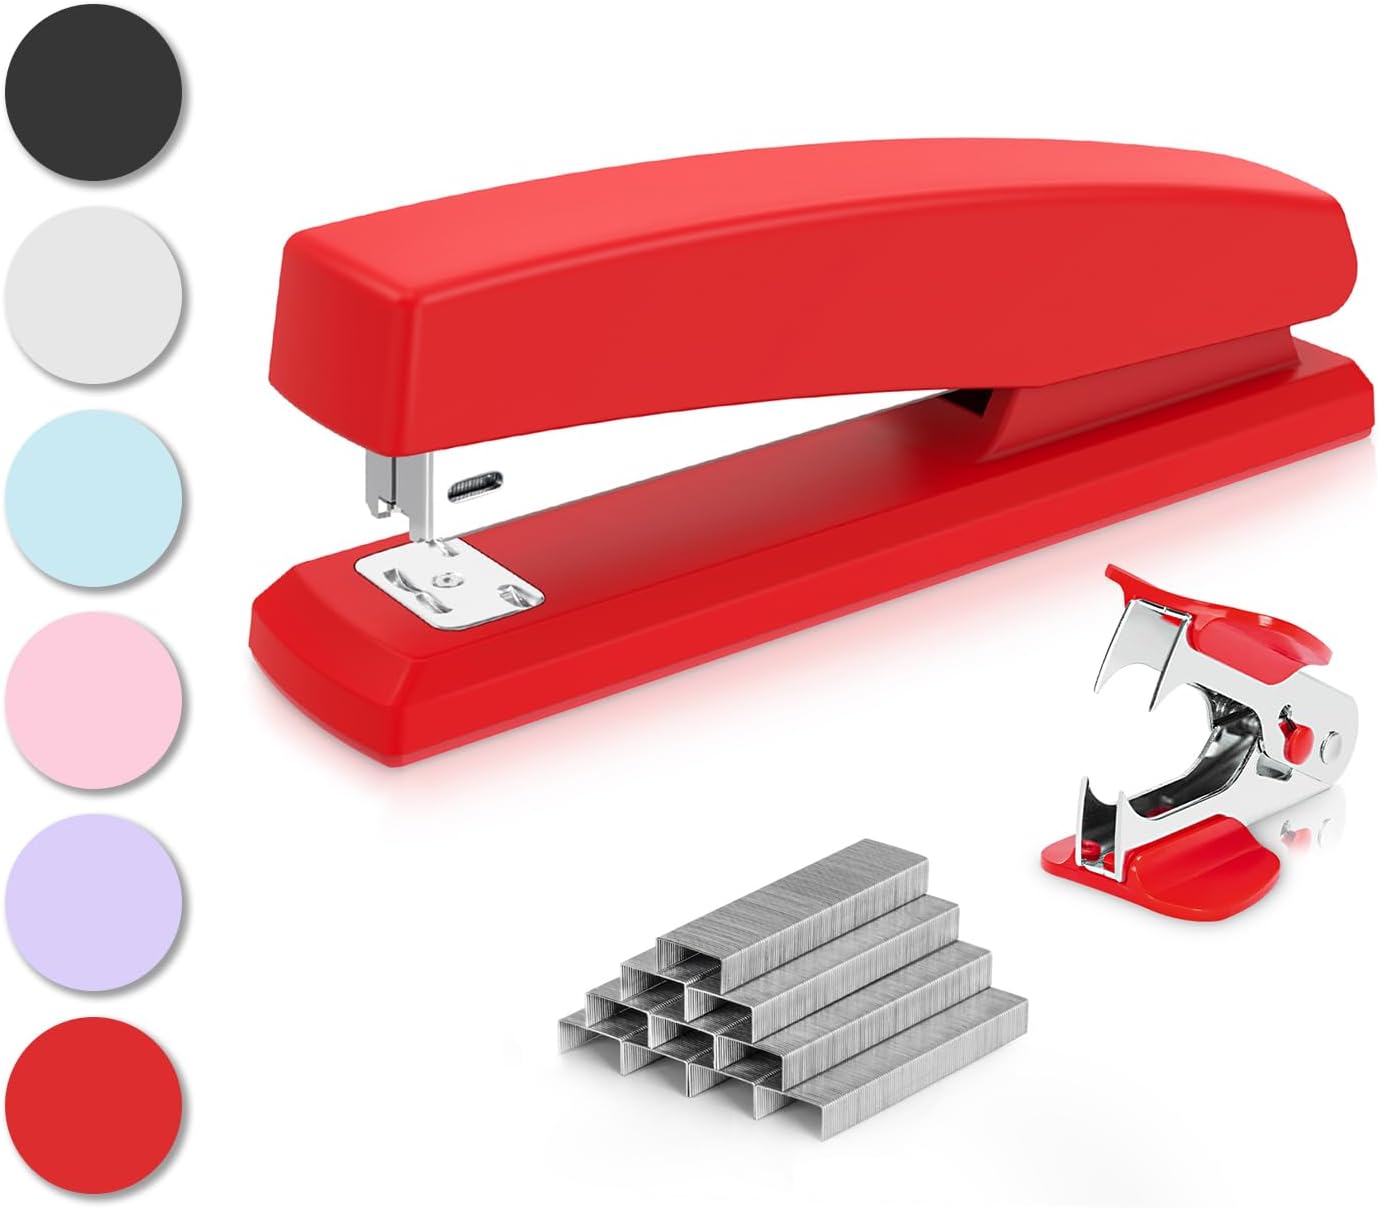 Deli Stapler, Desktop Stapler, Office Stapler, 25 Sheet Capacity, Includes 1000 Staples and Staple Remover, Red